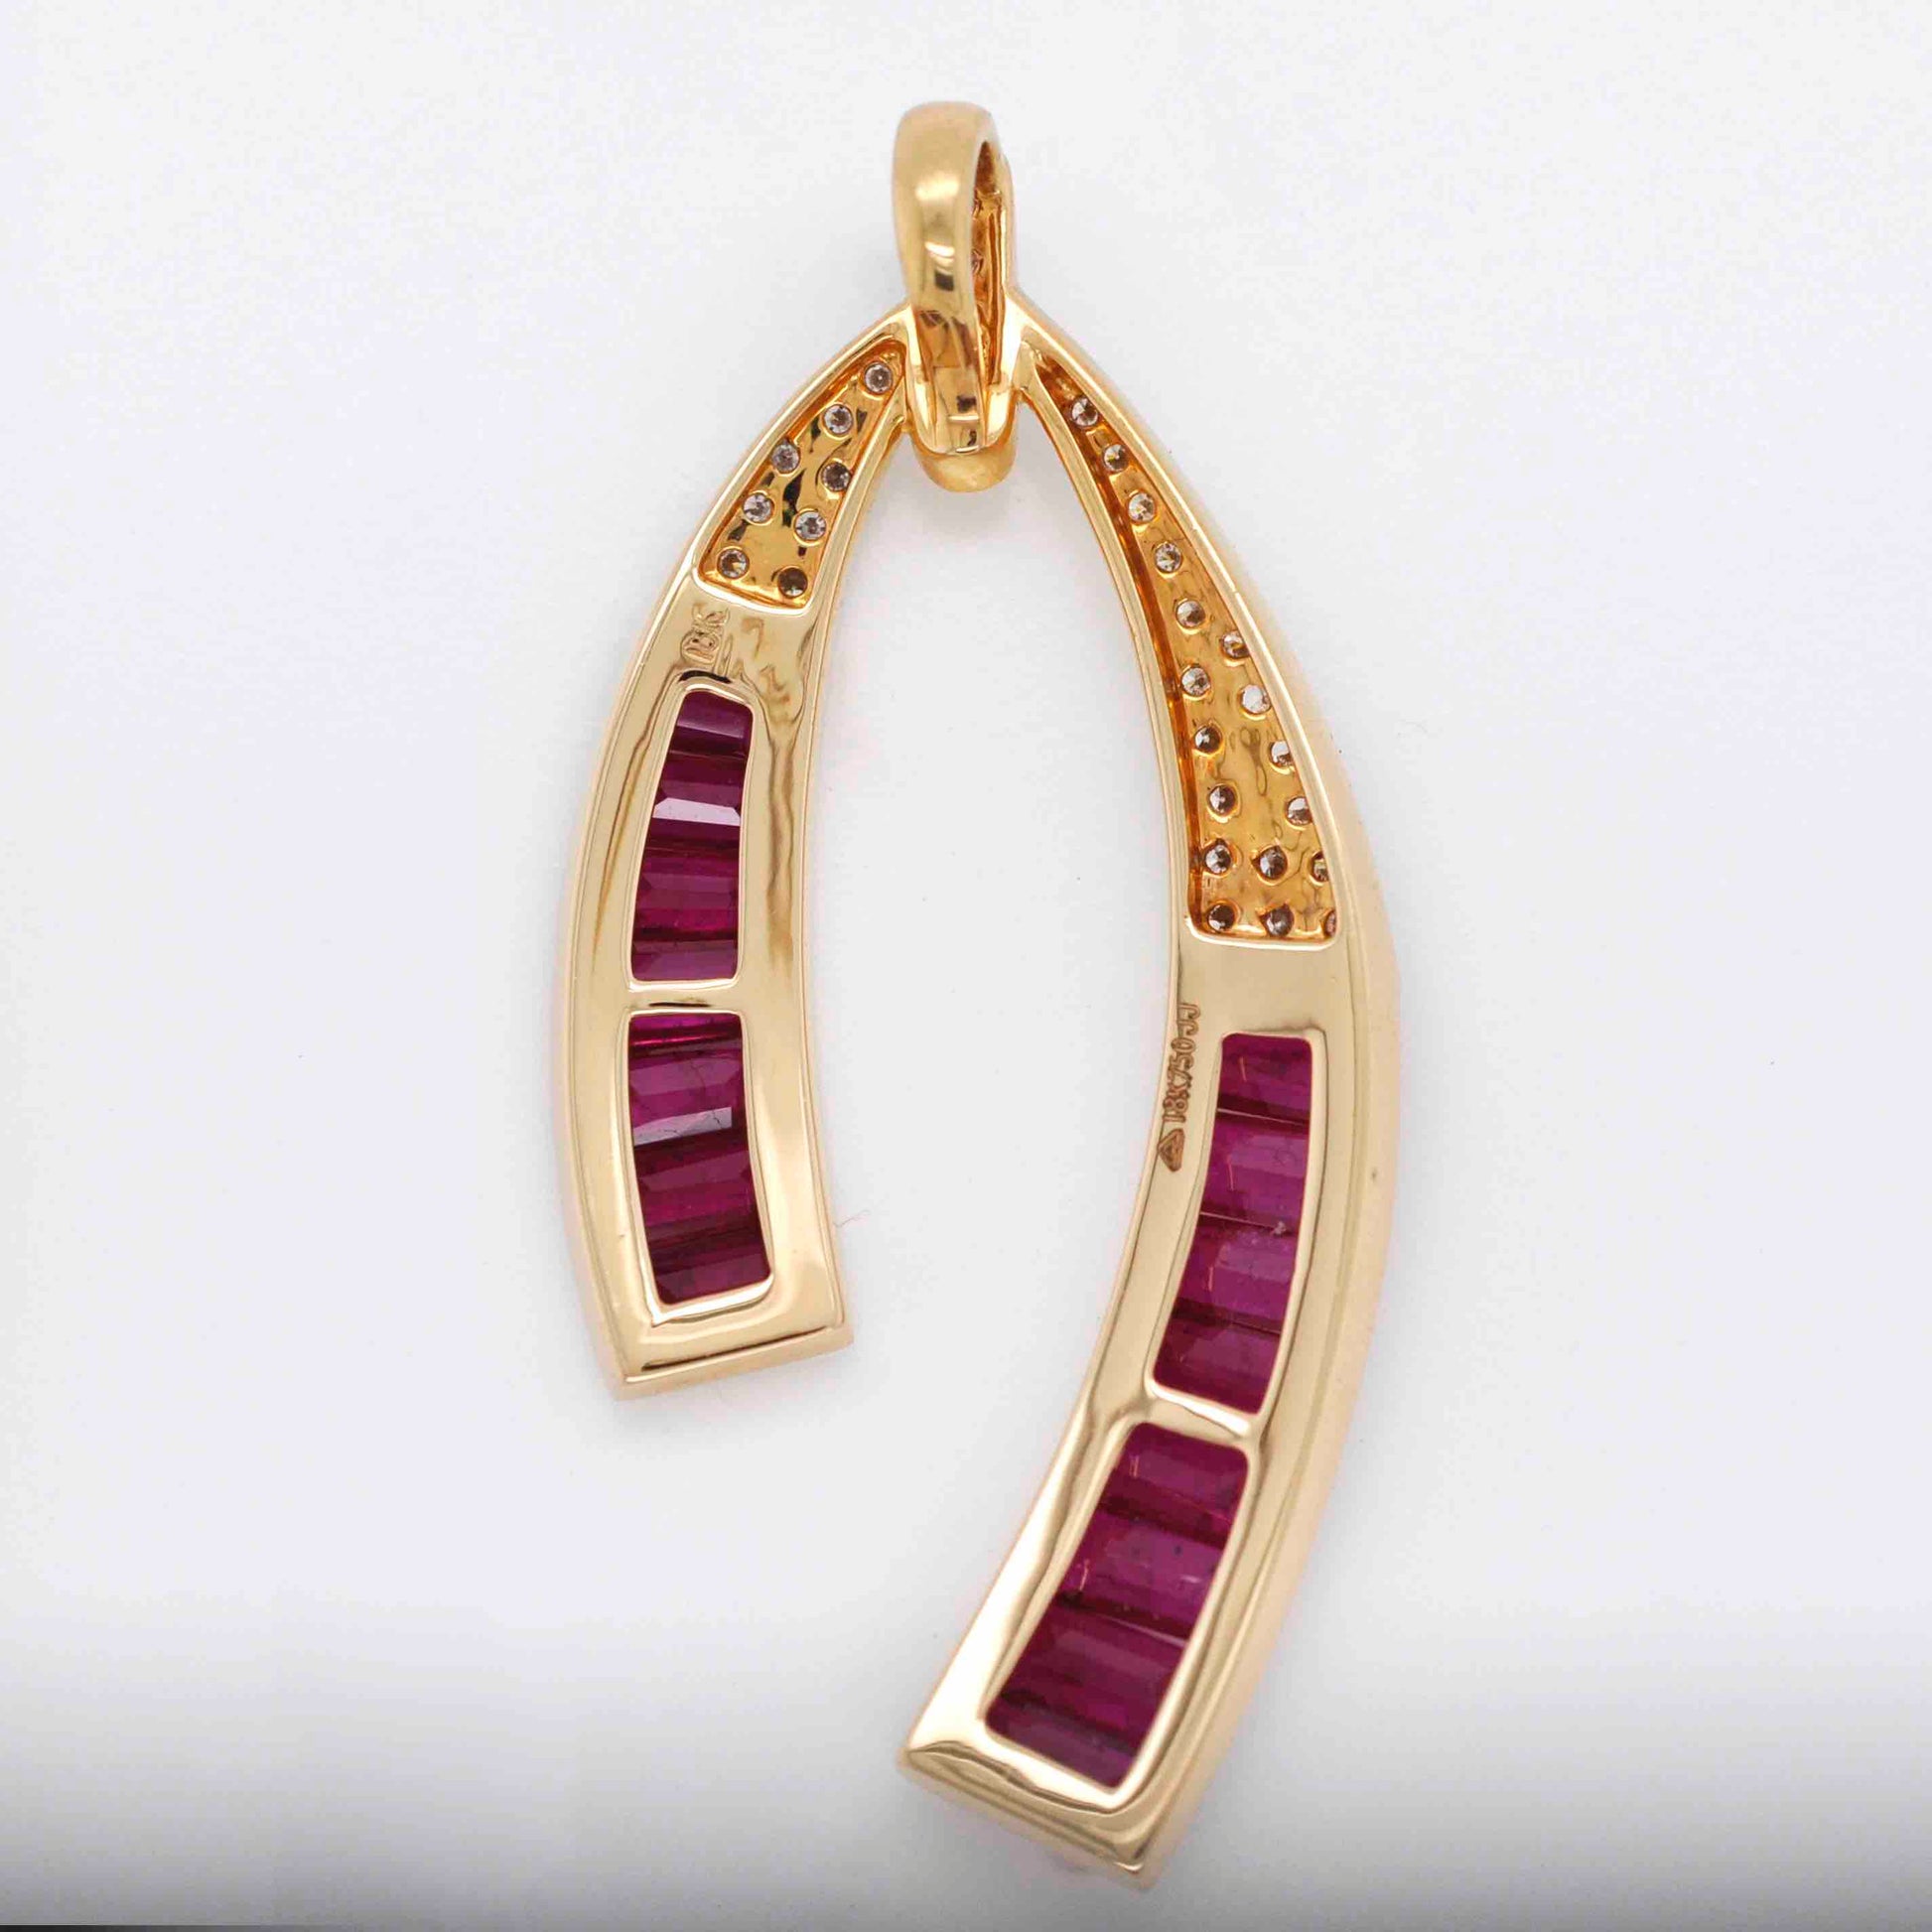 18k Gold Ruby Horseshoe Diamond Pendant Necklace - Vaibhav Dhadda Jewelry